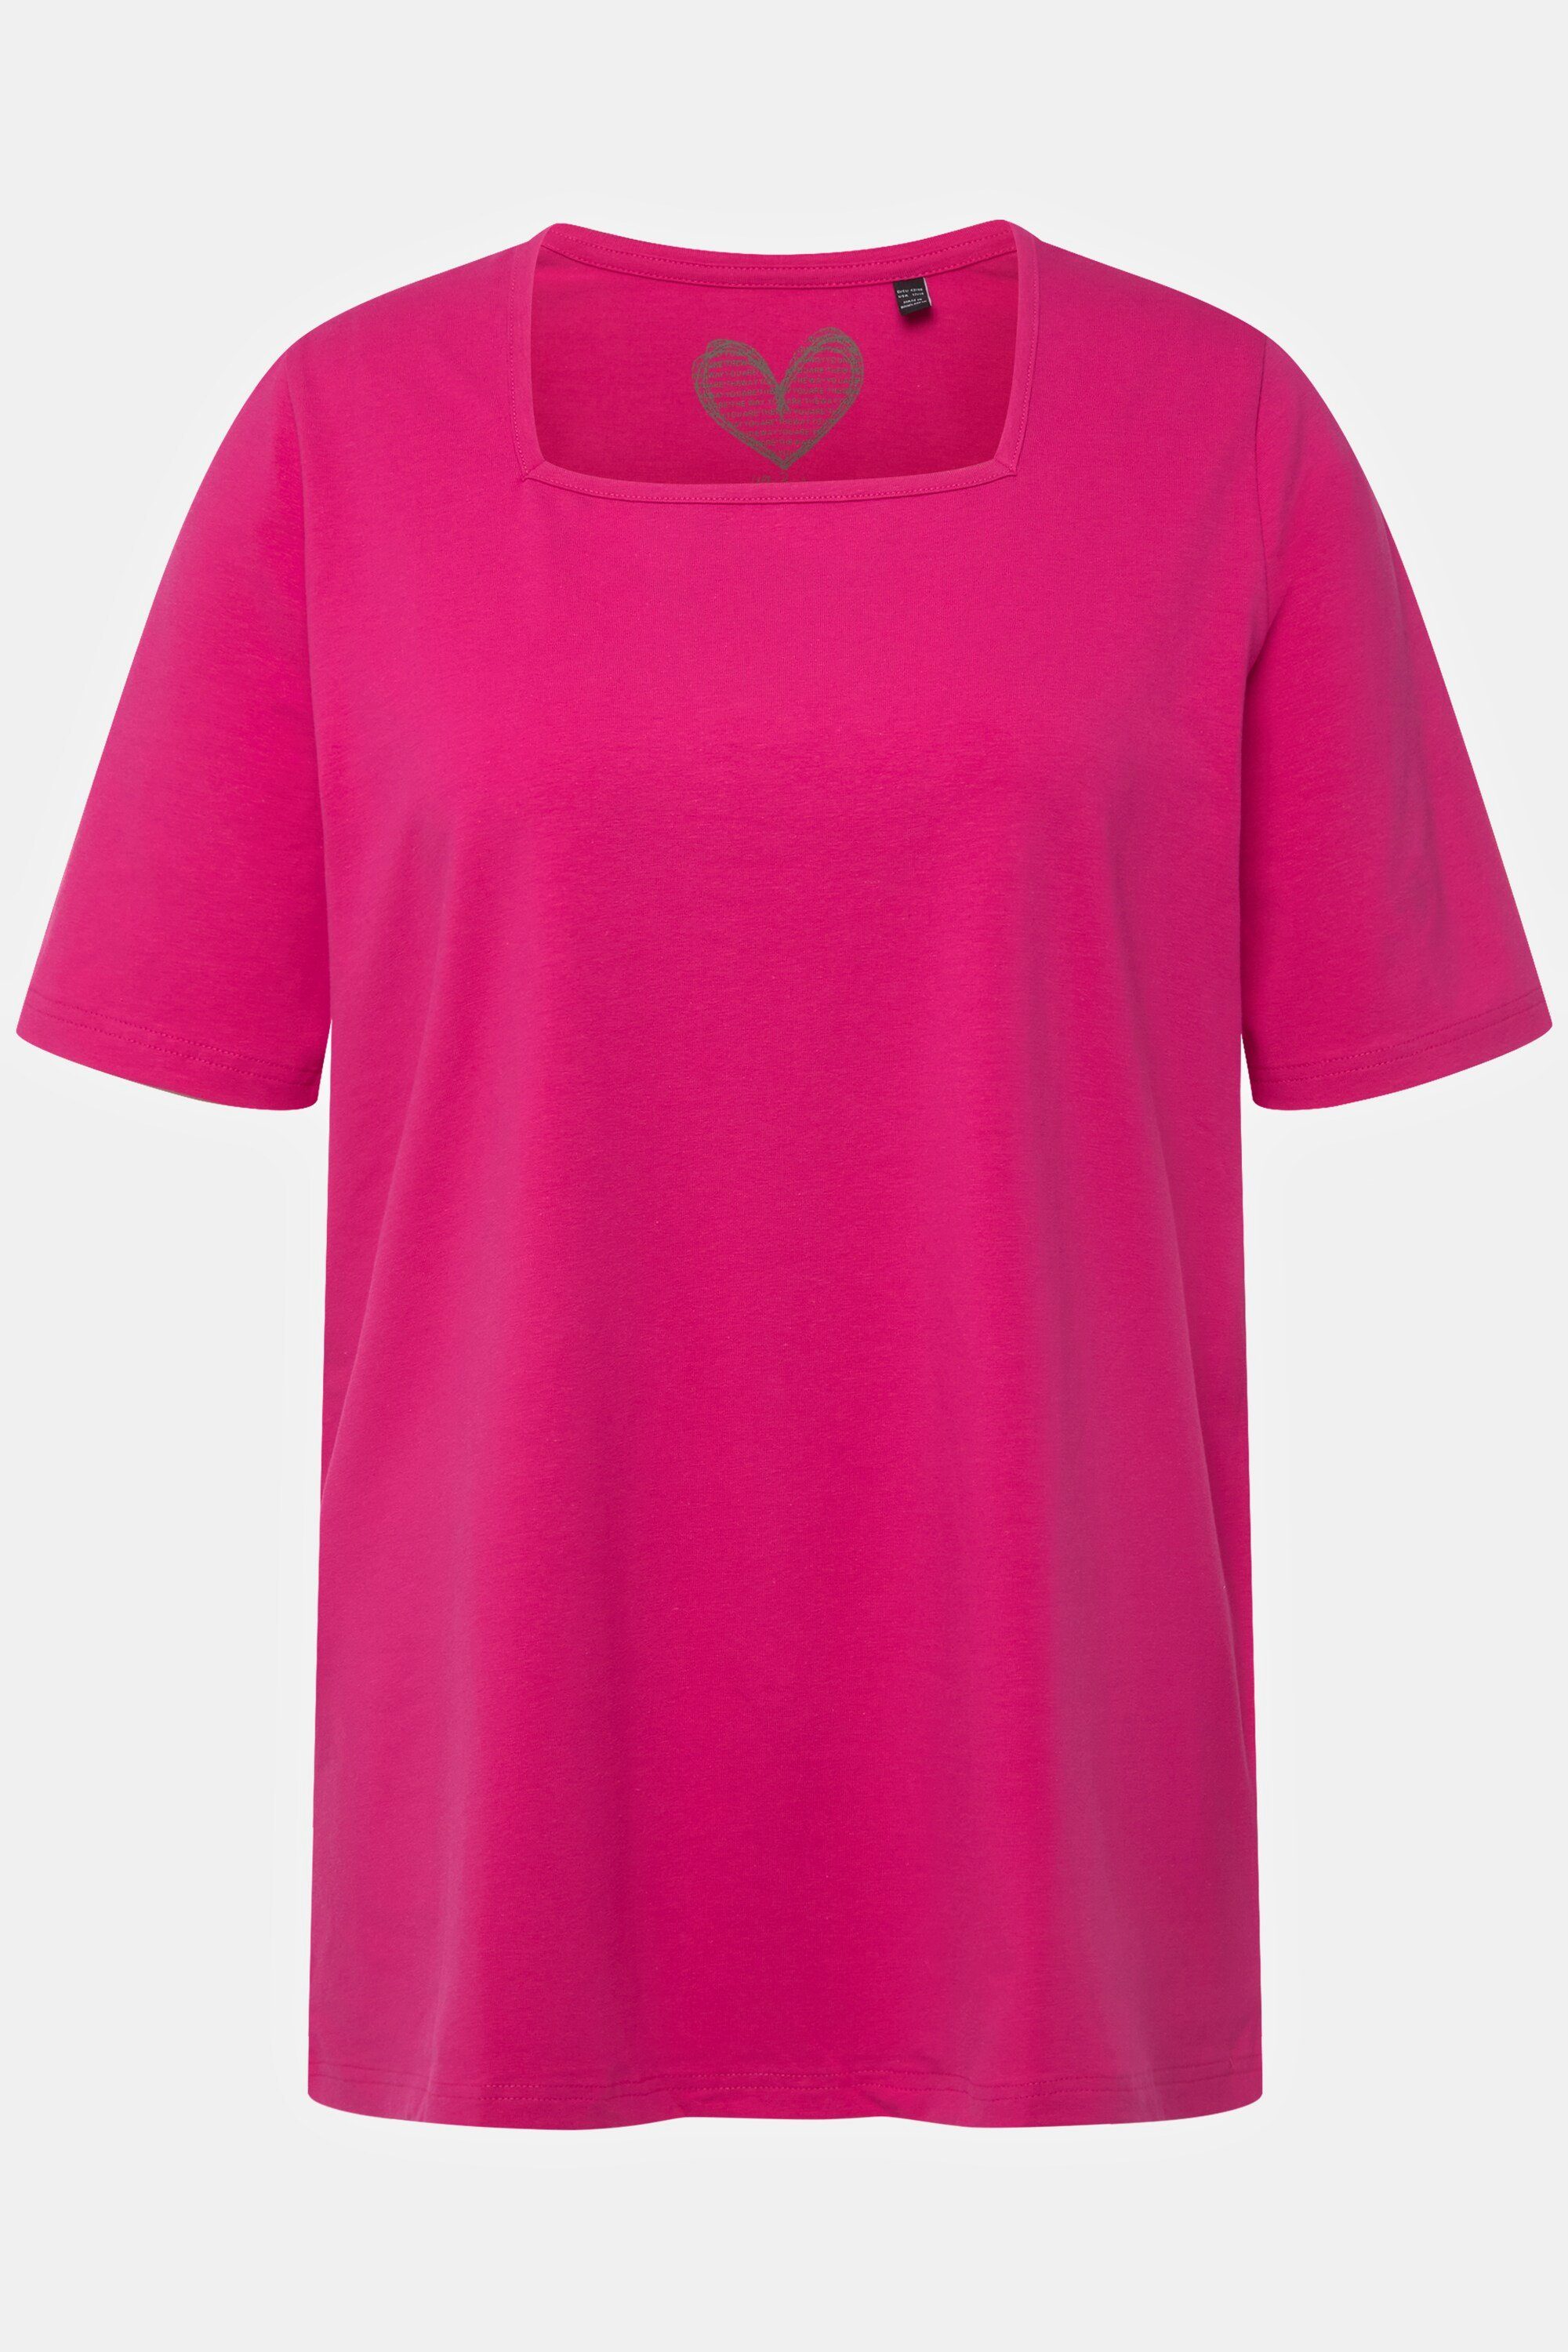 Ulla Popken Rundhalsshirt T-Shirt A-Linie pink Carree-Ausschnitt Halbarm fuchsia